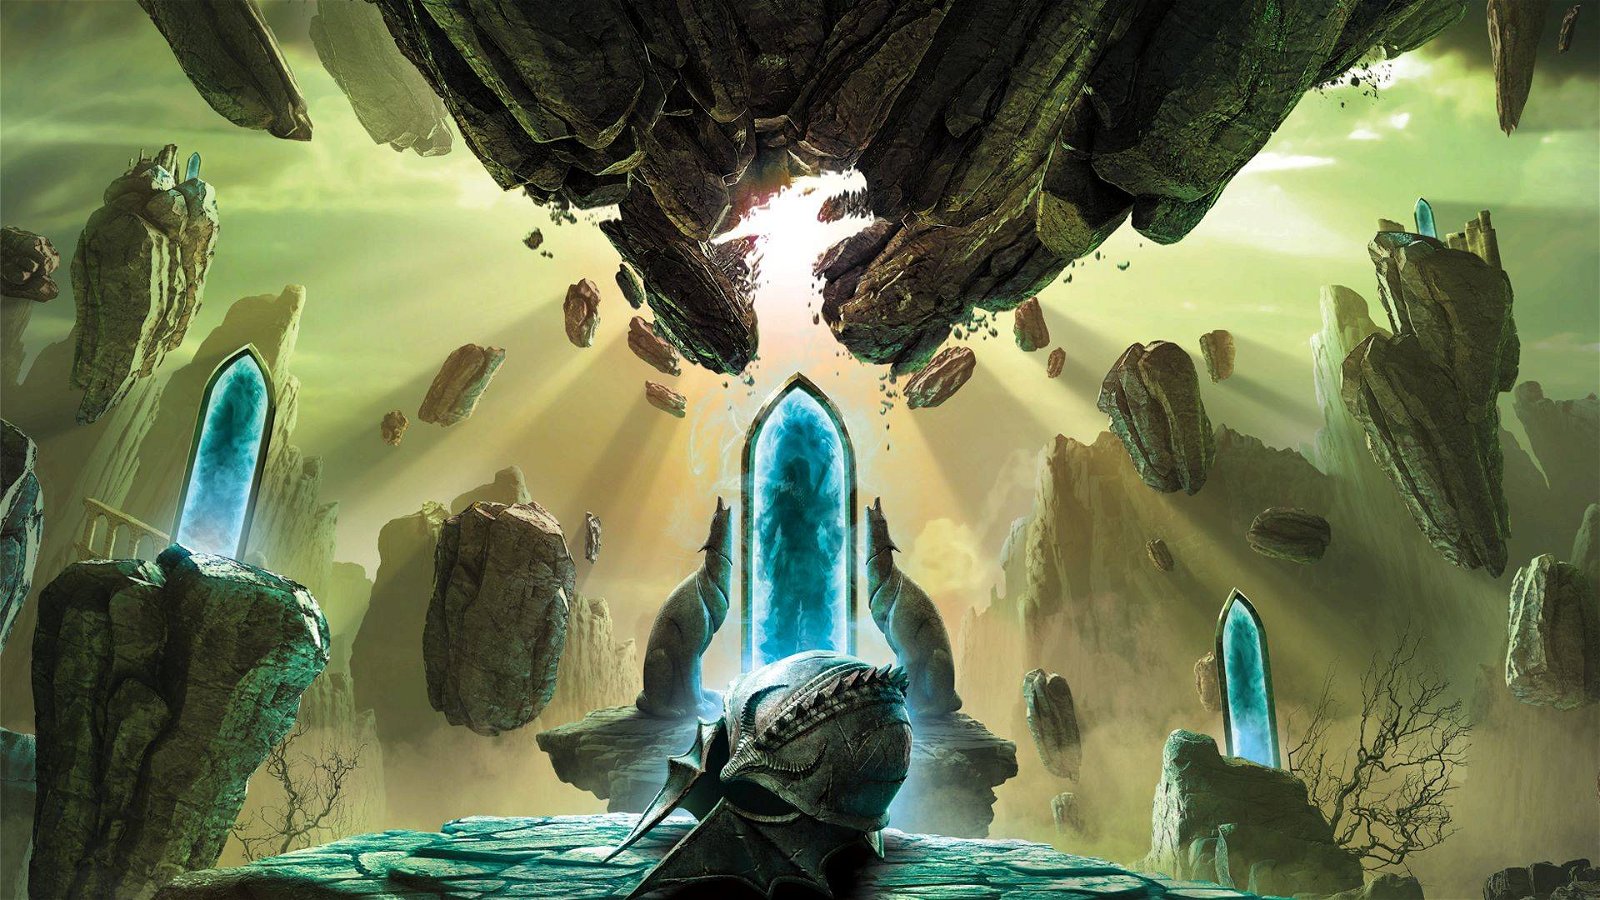 Immagine di Dragon Age Day: EA e Bioware celebrano la nota saga fantasy con diverse novità